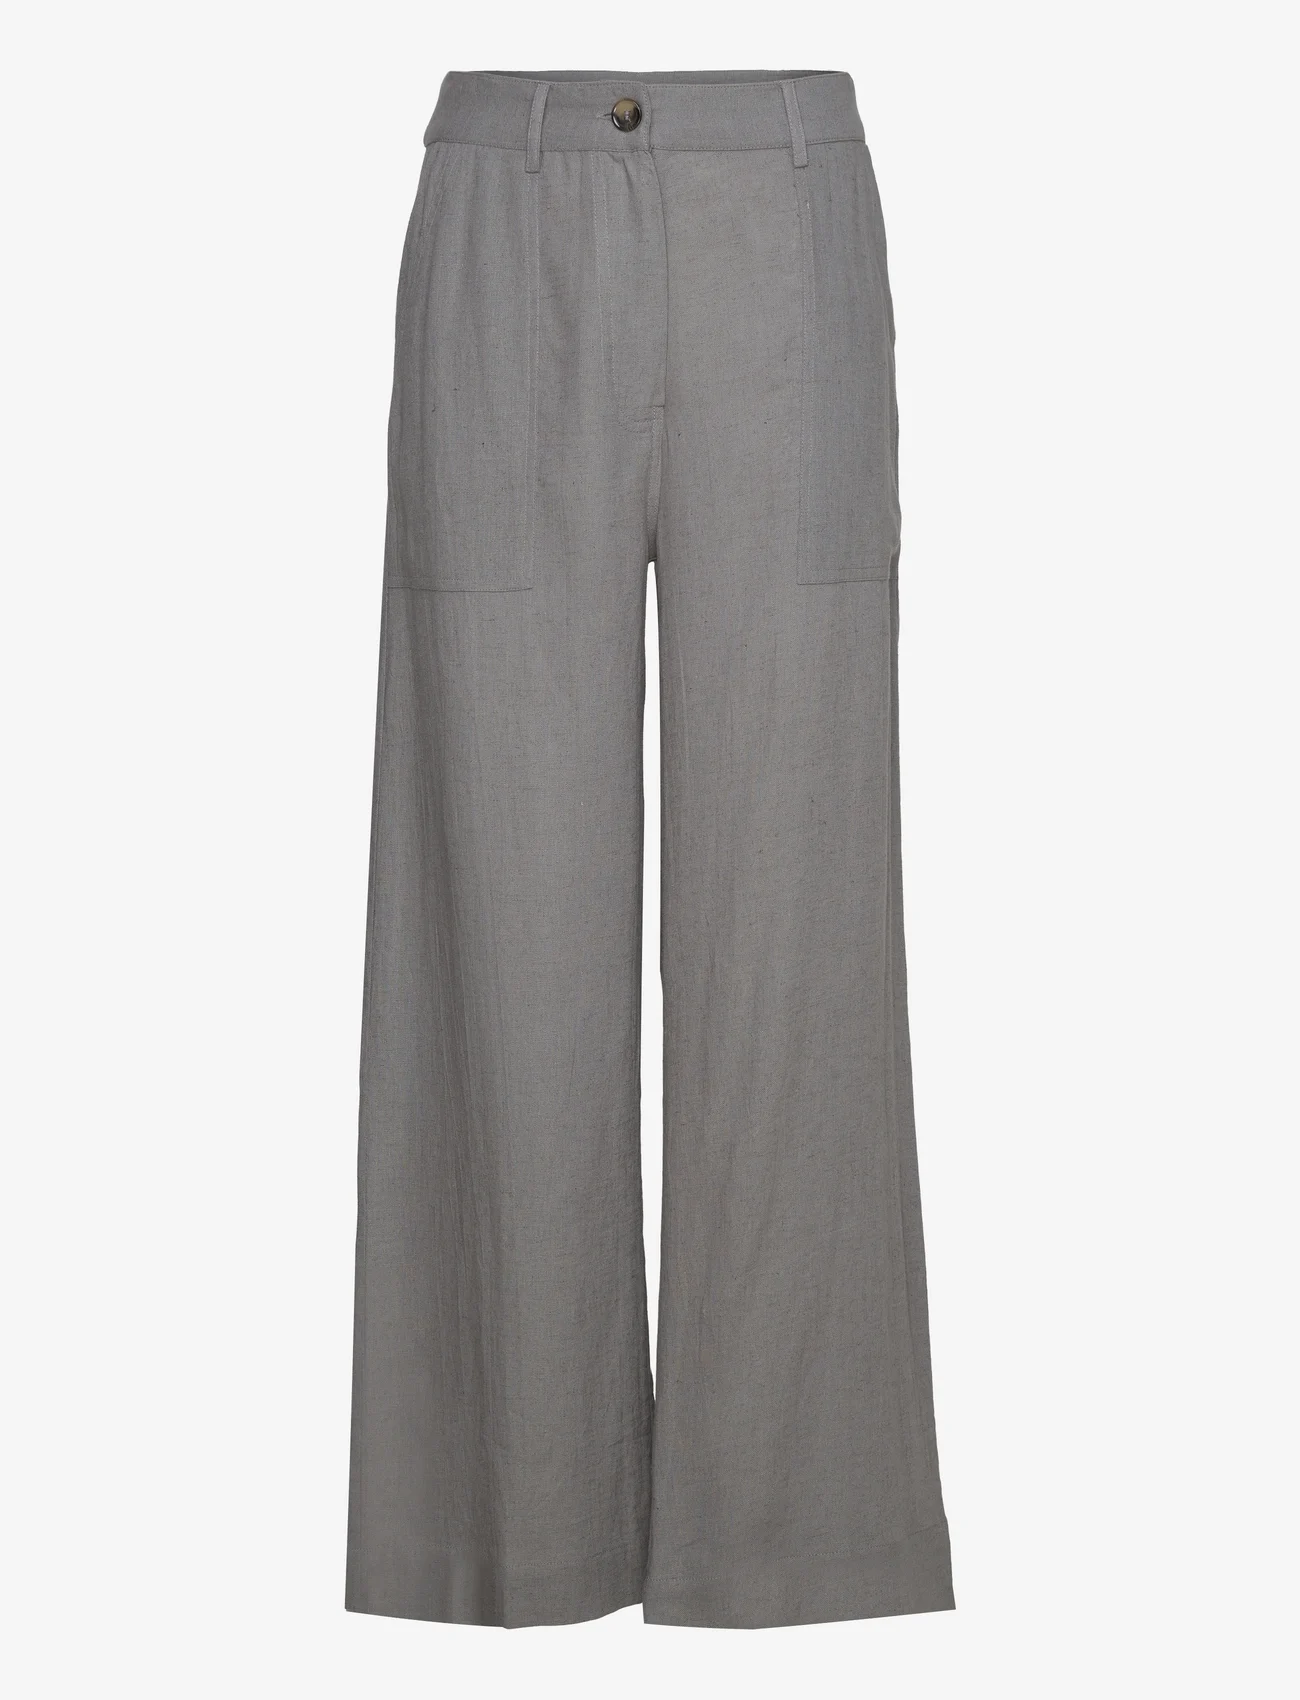 Sofie Schnoor - Trousers - linen trousers - steel grey - 0